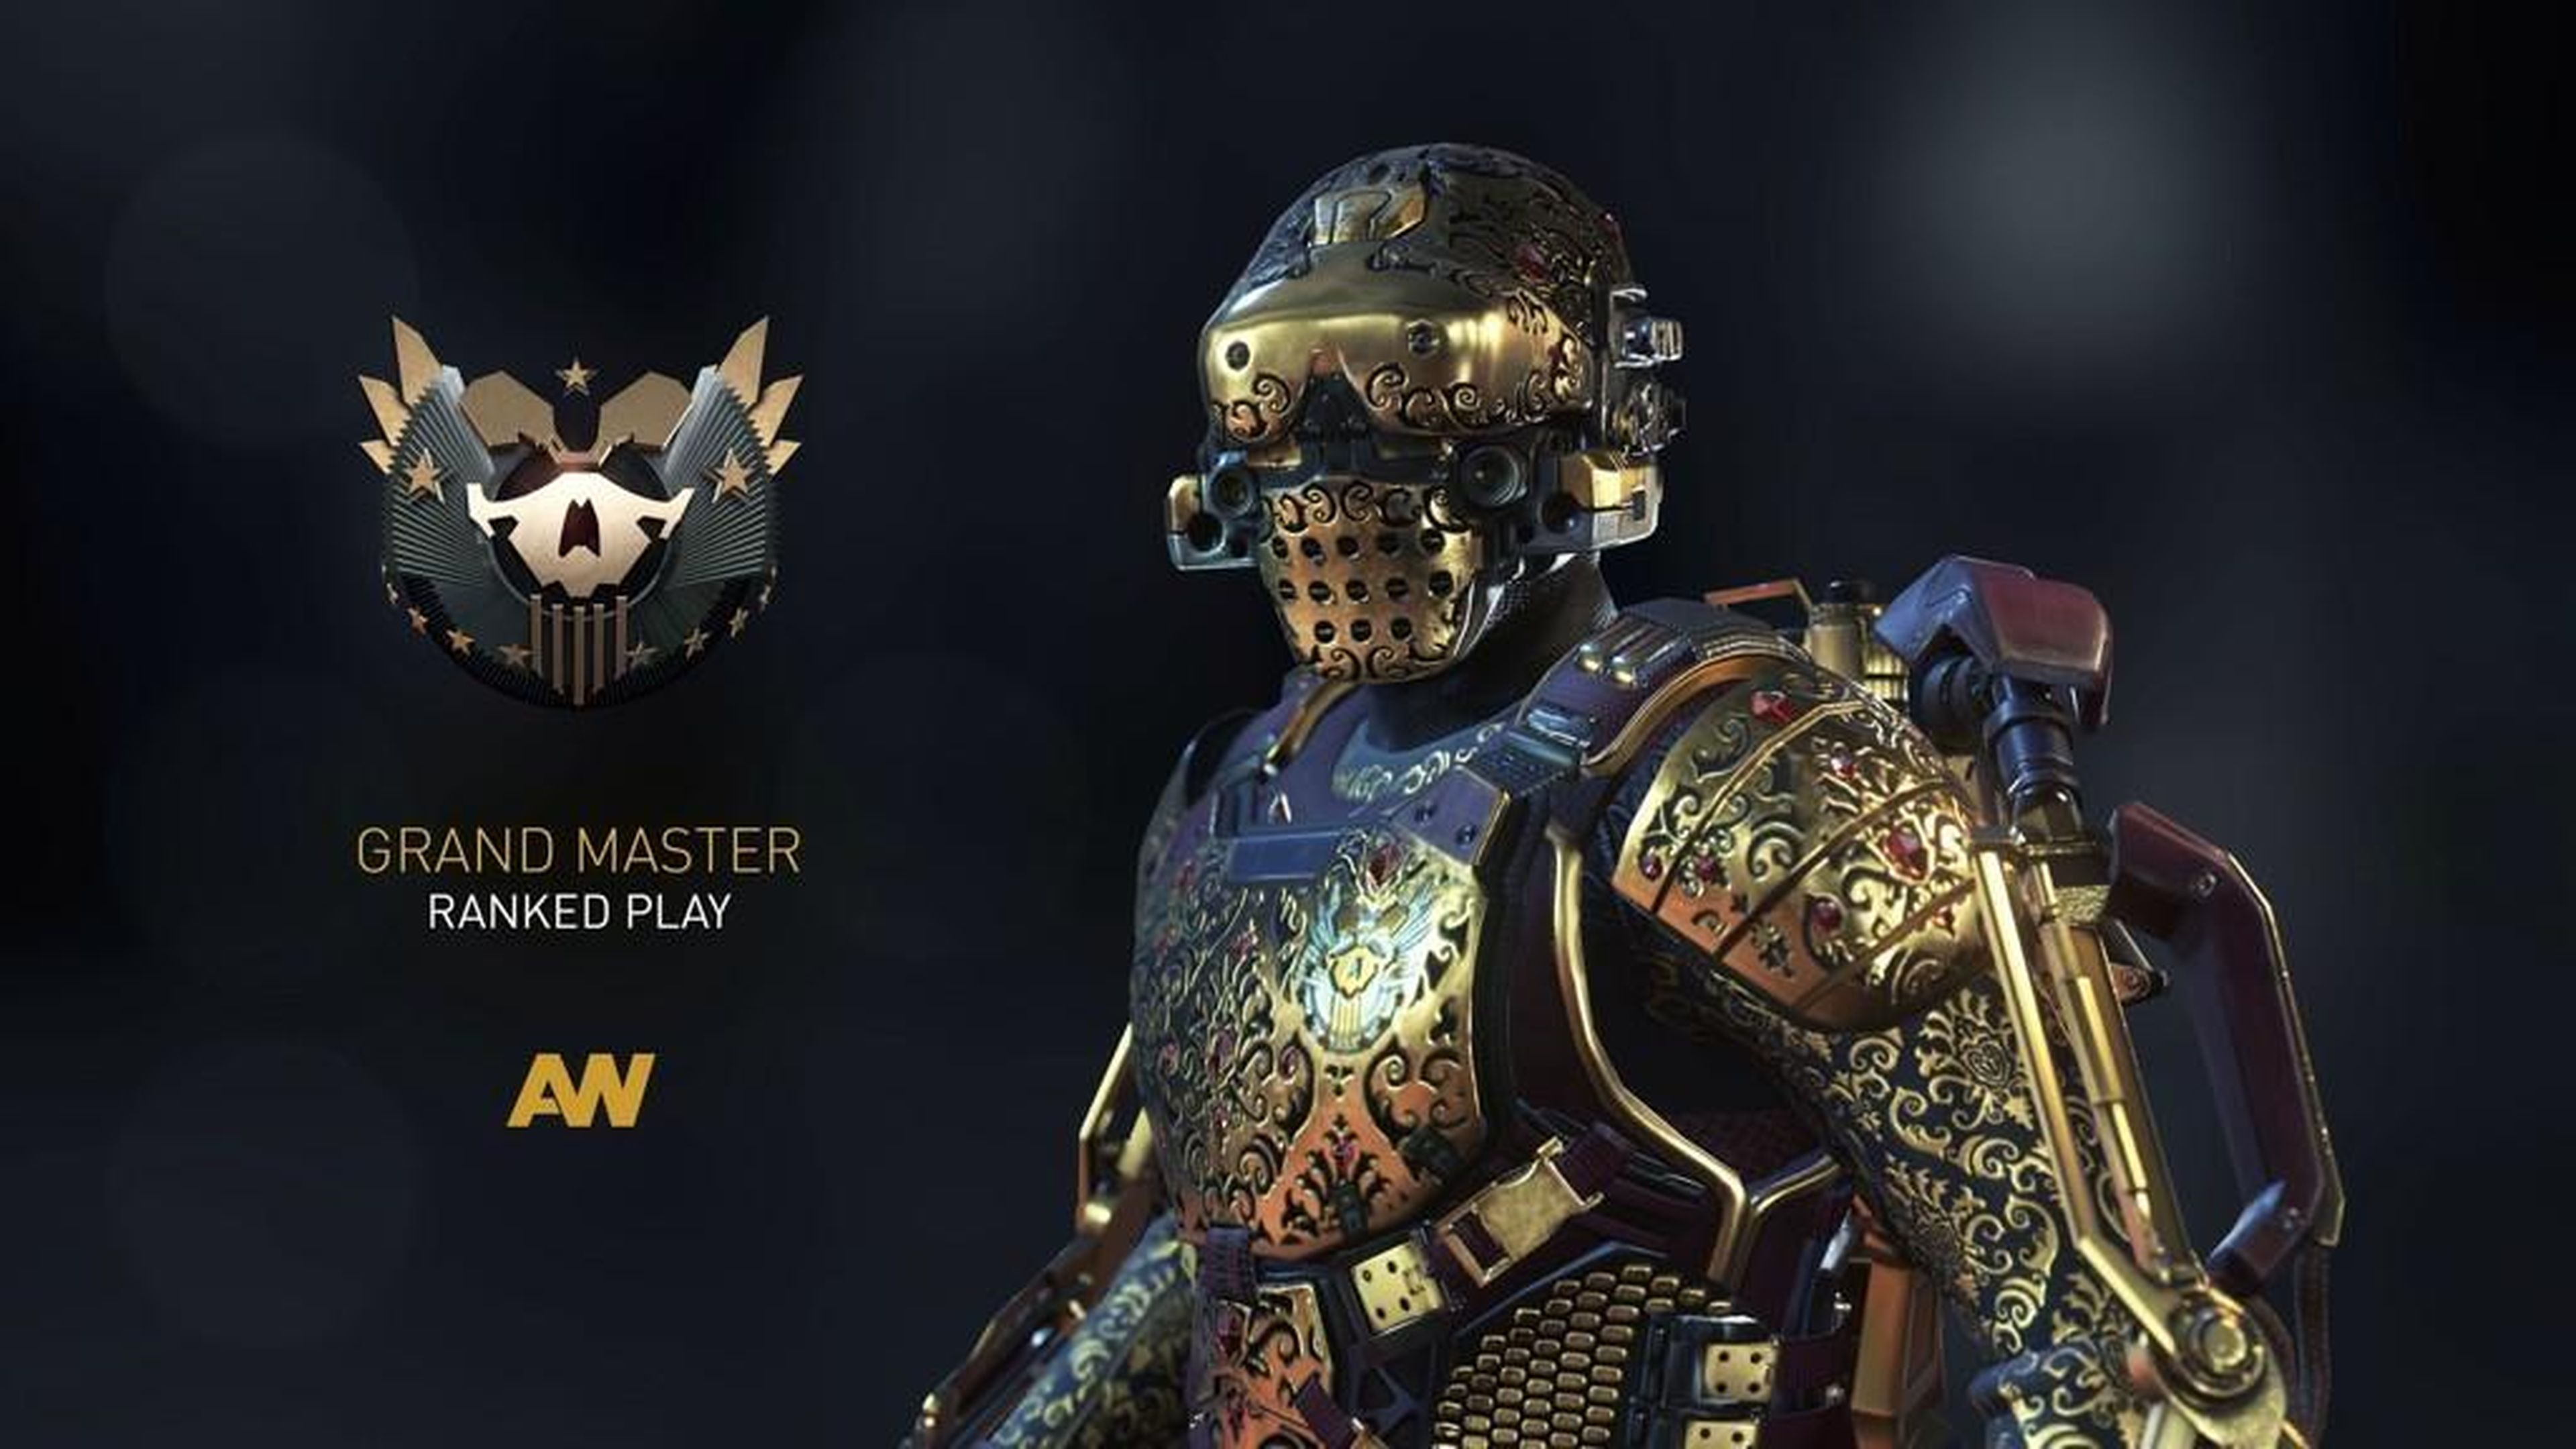 CoD Advanced Warfare premiará a los 100 mejores jugadores